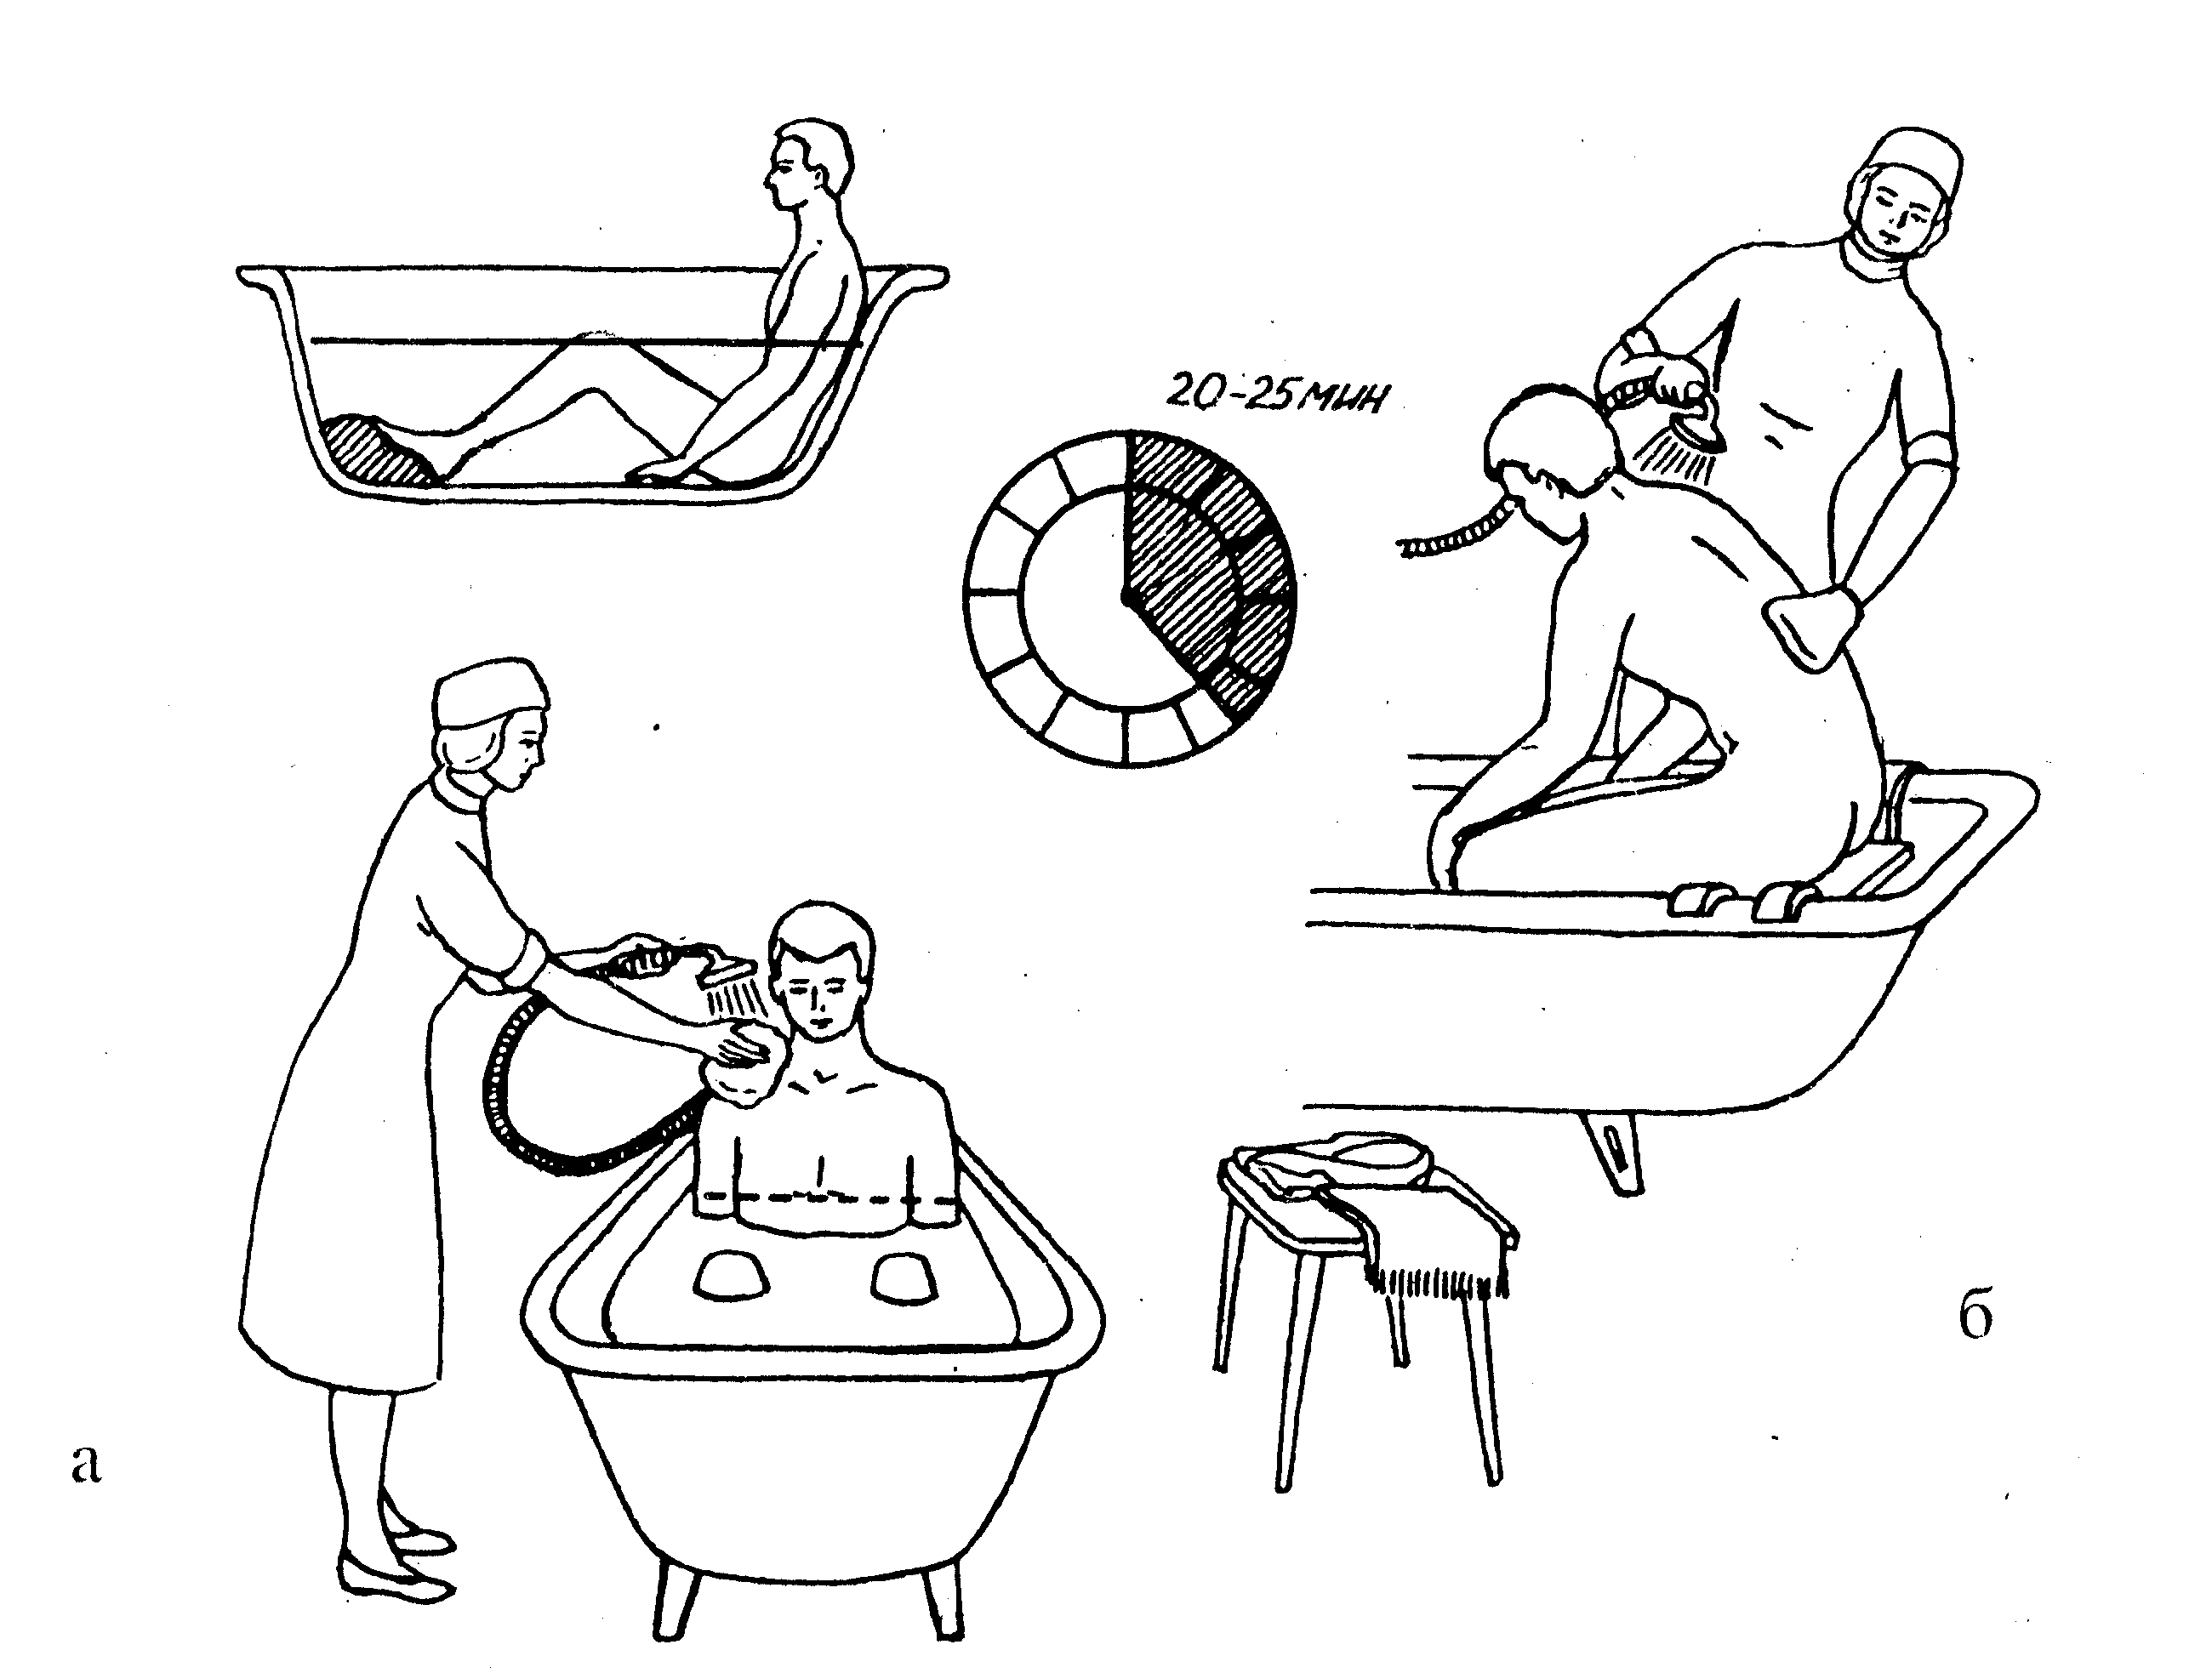 Гигиеническая ванна алгоритм